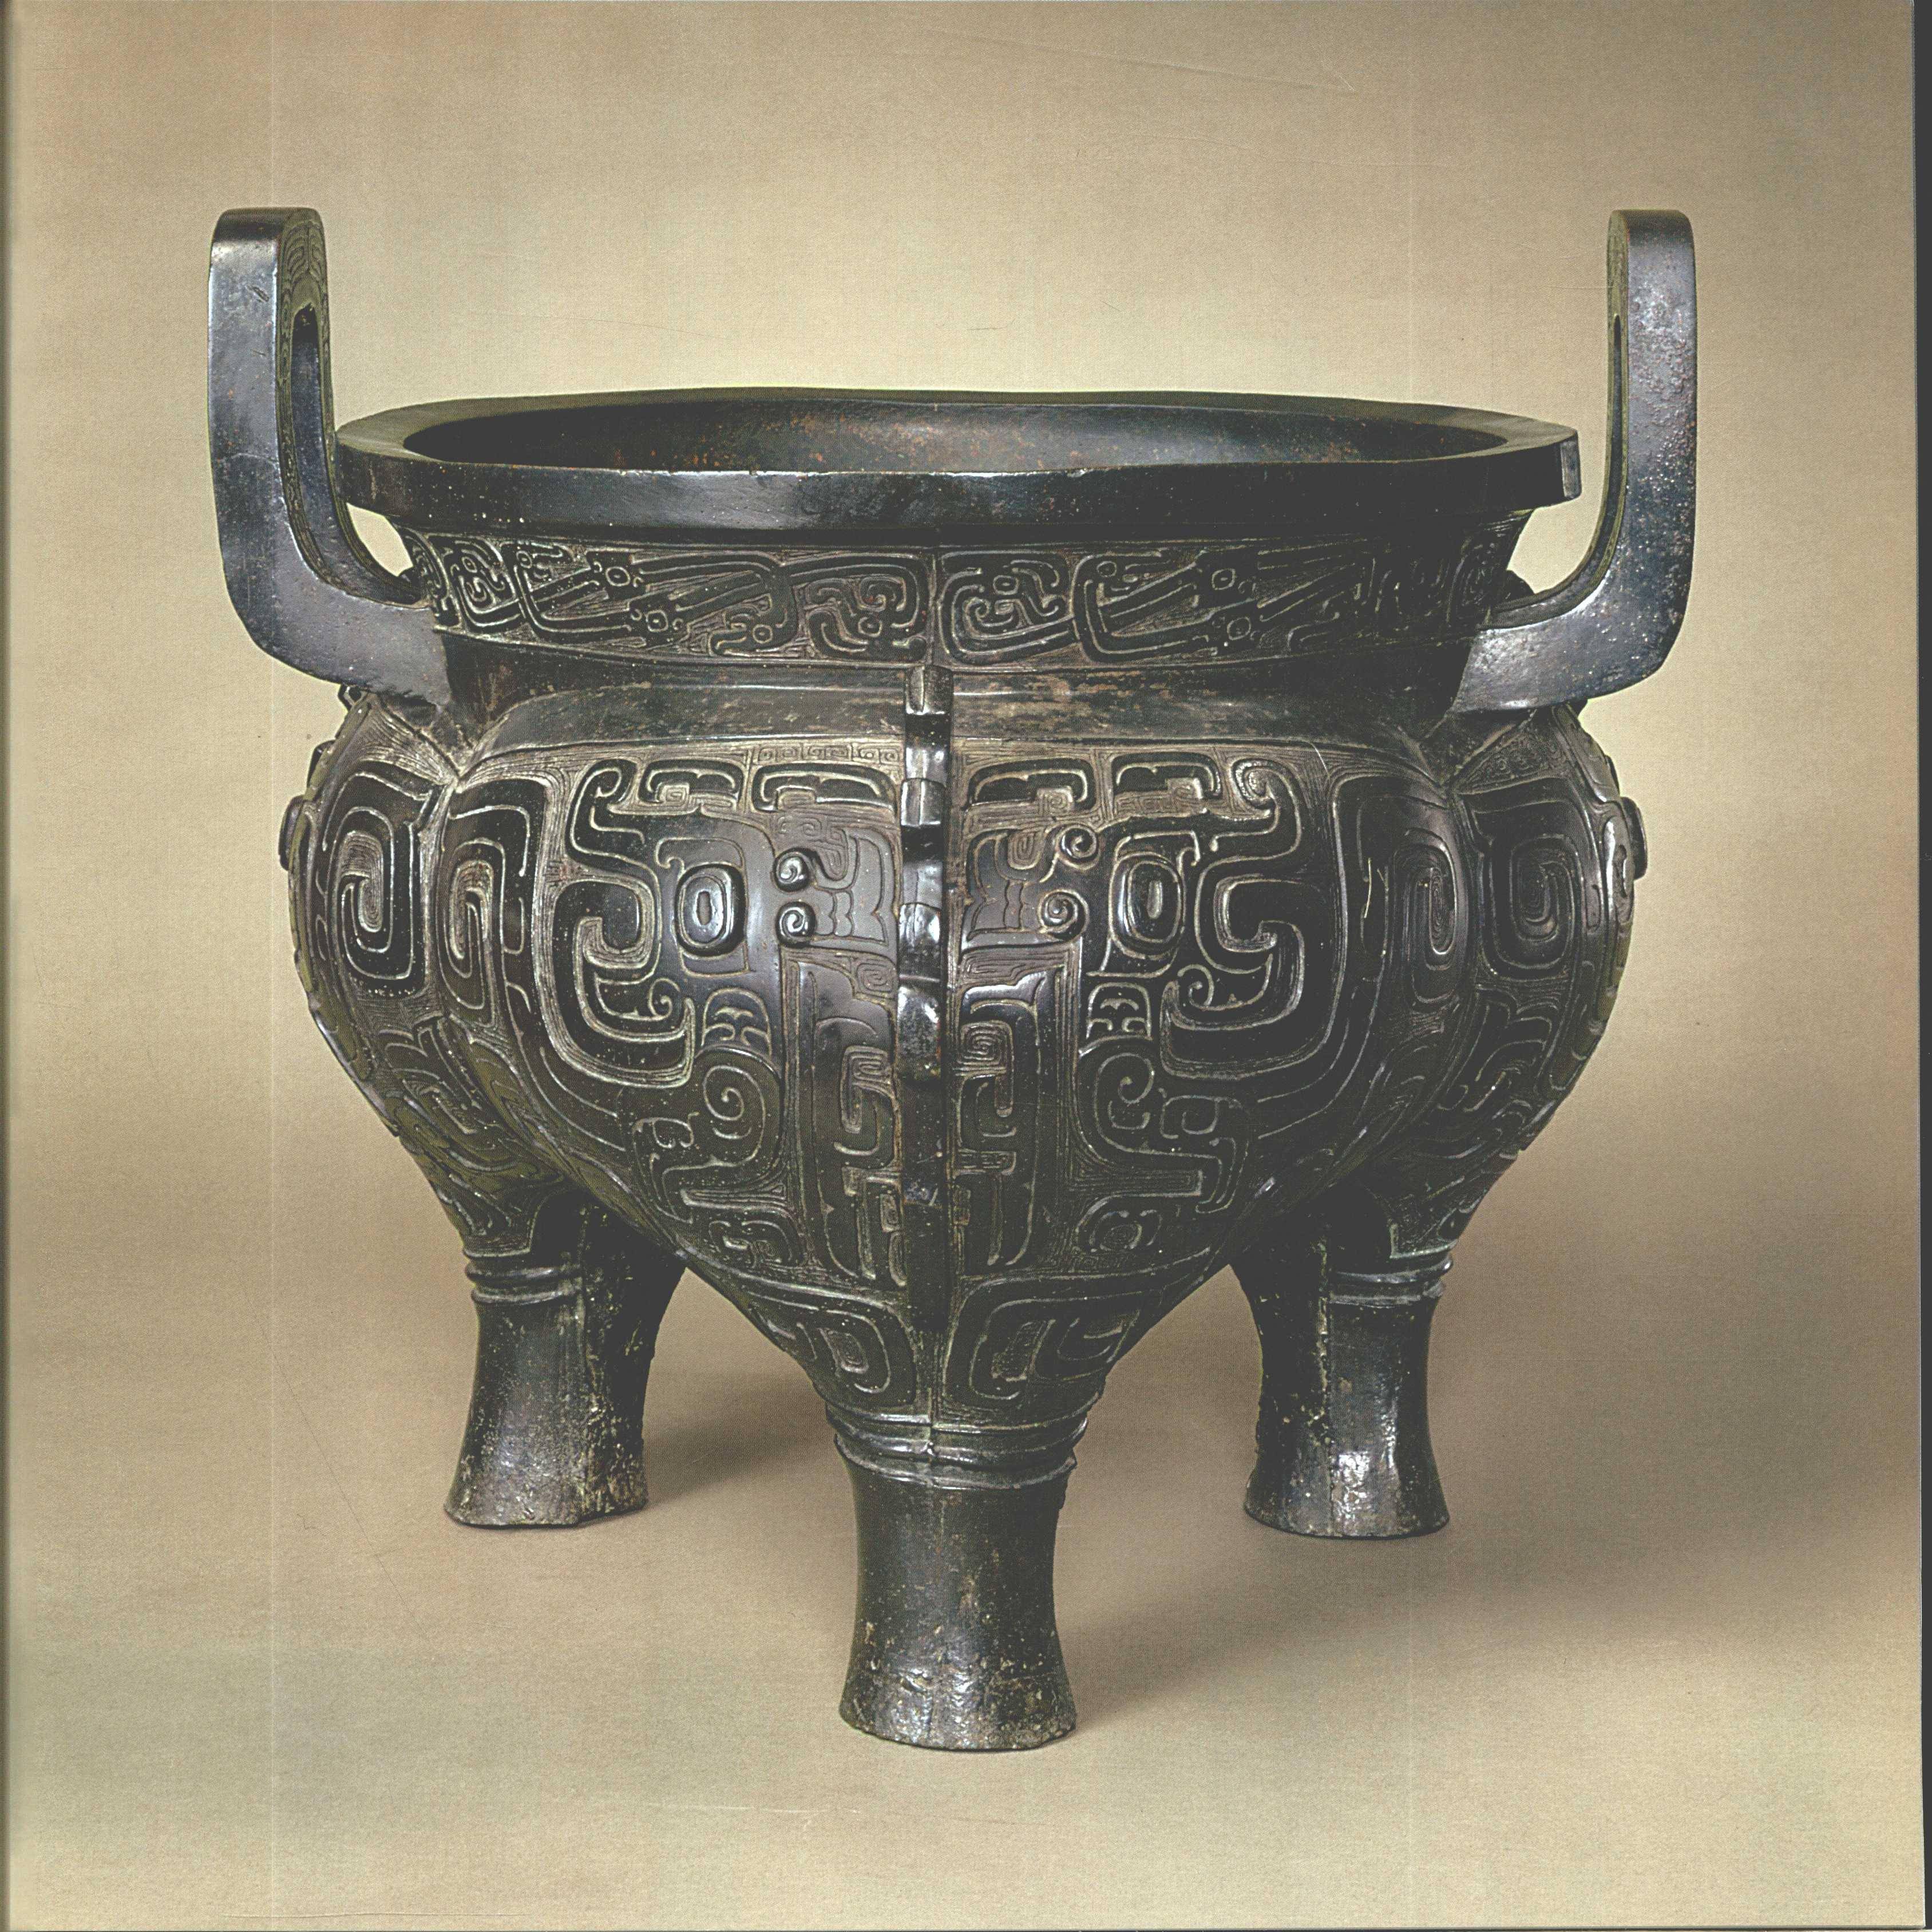 中国青铜器文化,重要的文物价值和艺术价值,不朽的中华文化瑰宝